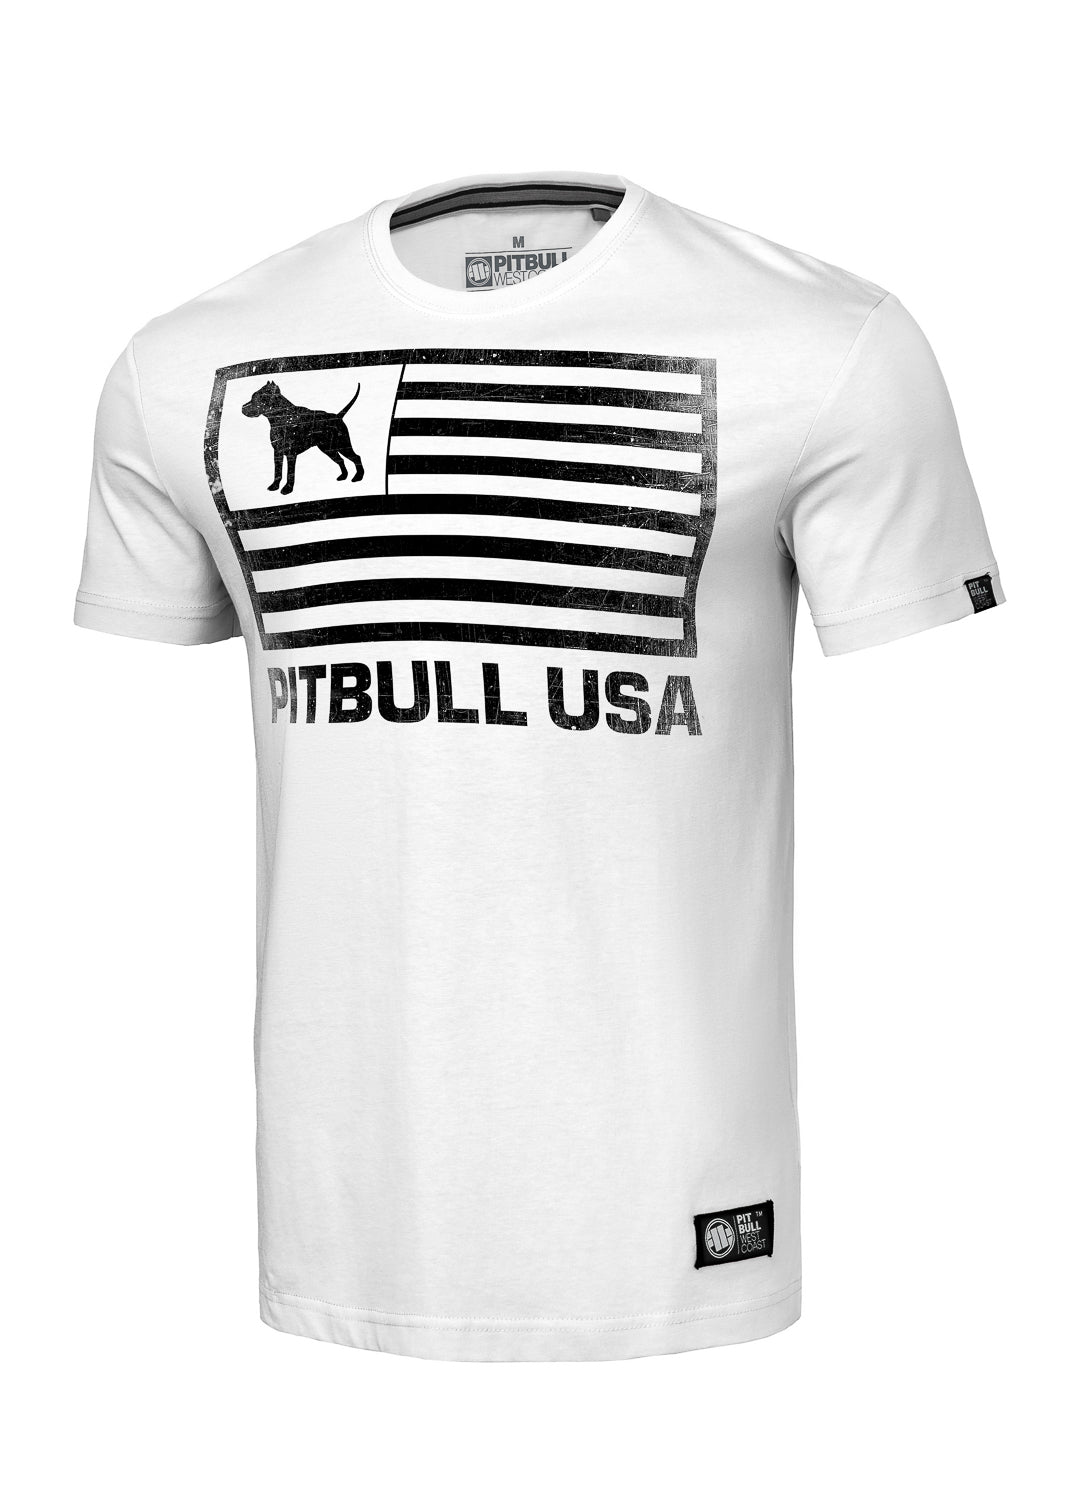 PITBULL USA T-shirt White